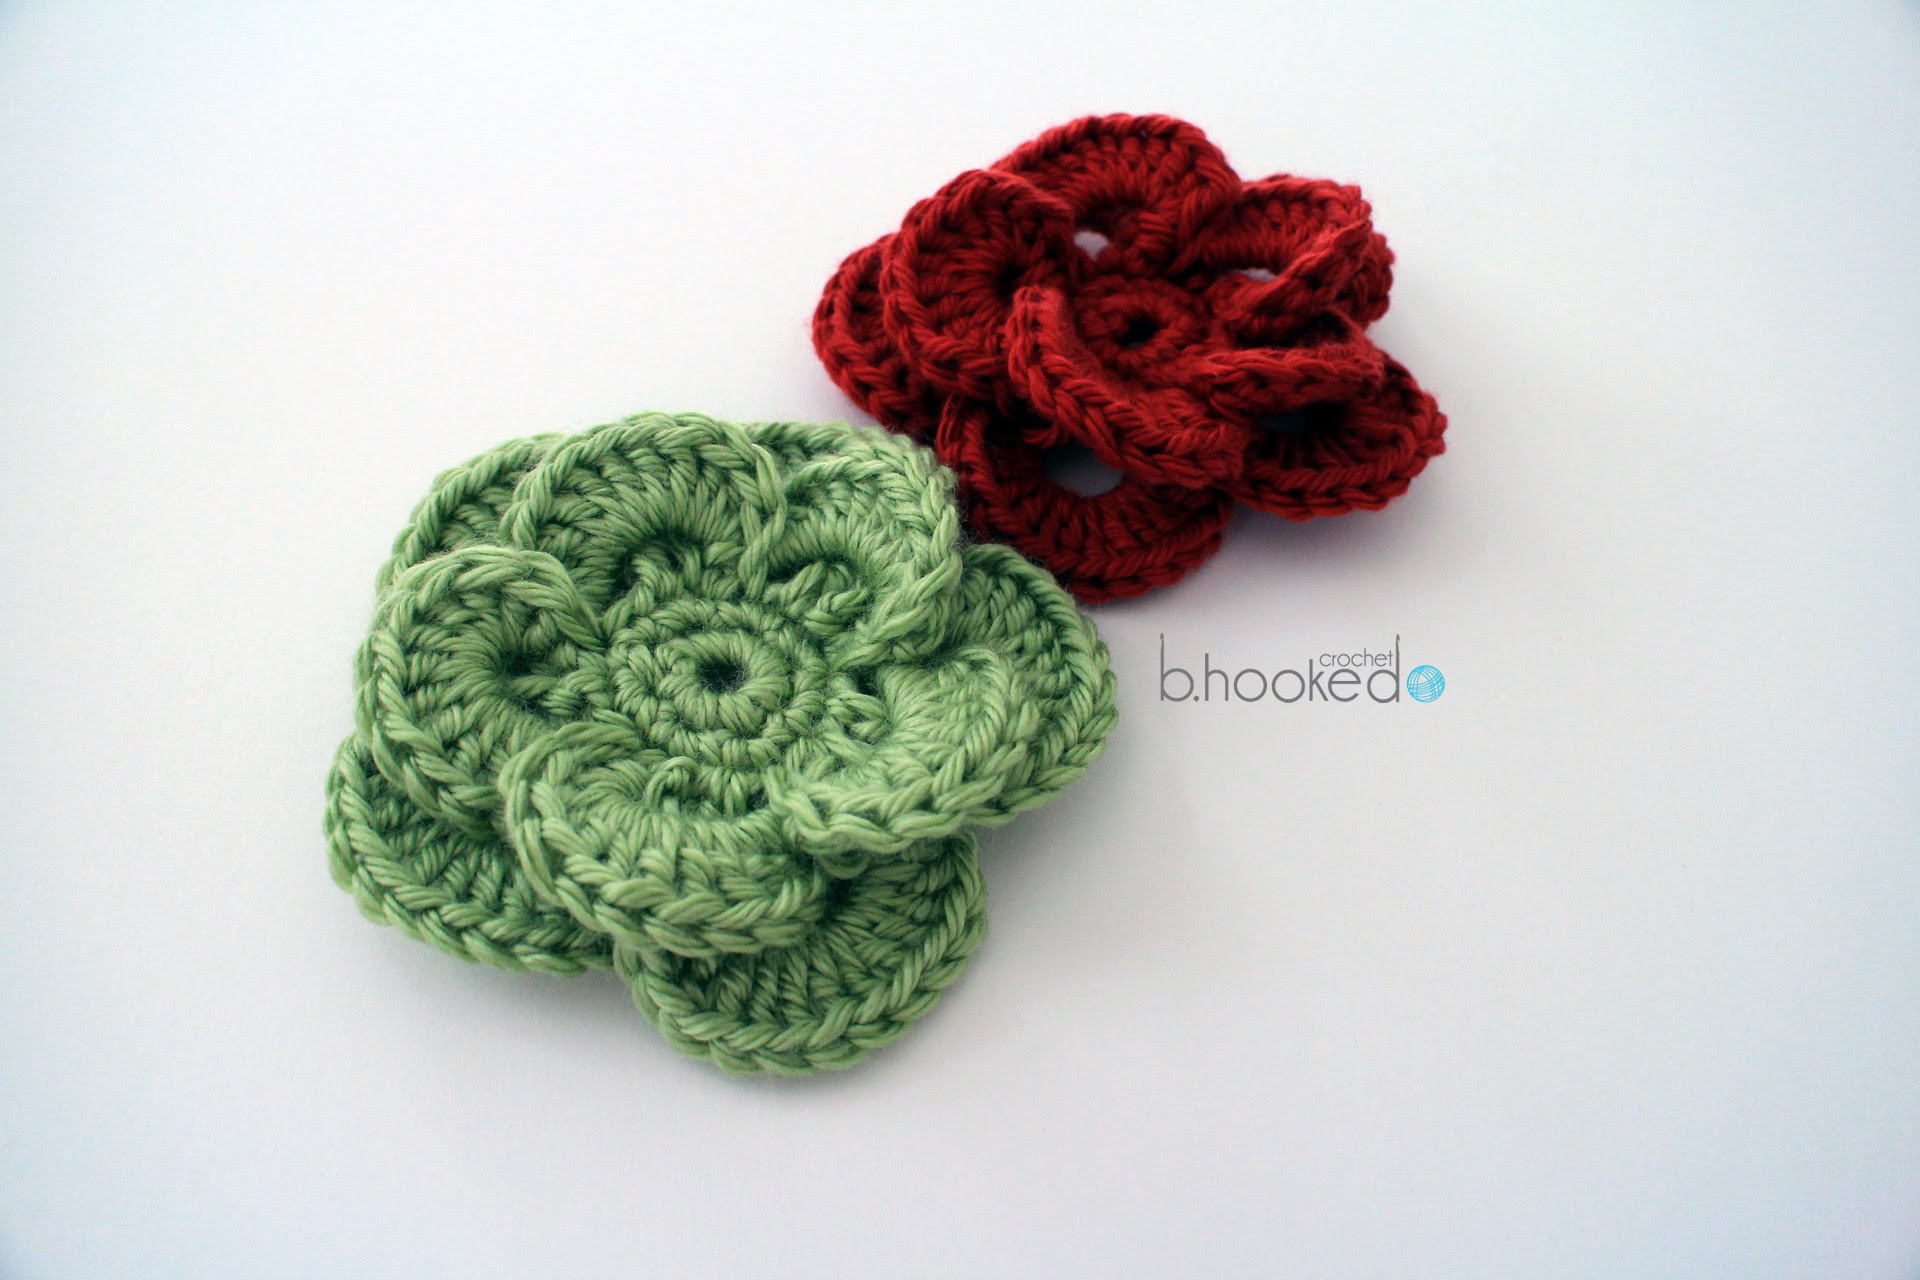 flower crochet pattern how to crochet a flower: crochet wagon wheel flower free crochet pattern -  youtube ZLWRUNU